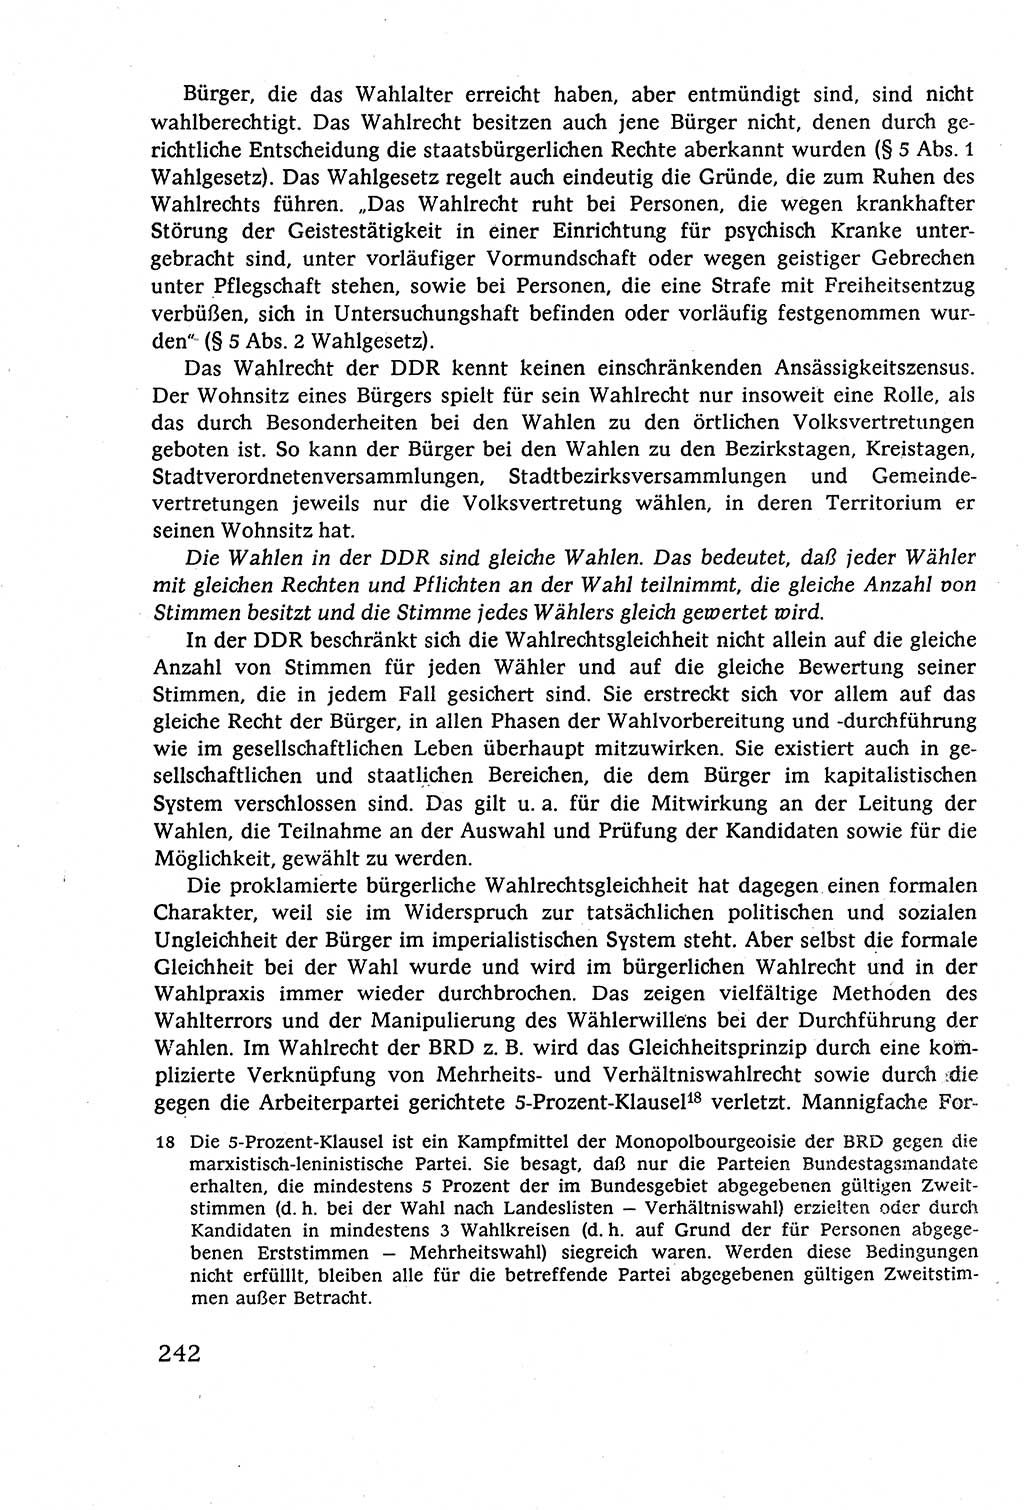 Staatsrecht der DDR (Deutsche Demokratische Republik), Lehrbuch 1977, Seite 242 (St.-R. DDR Lb. 1977, S. 242)